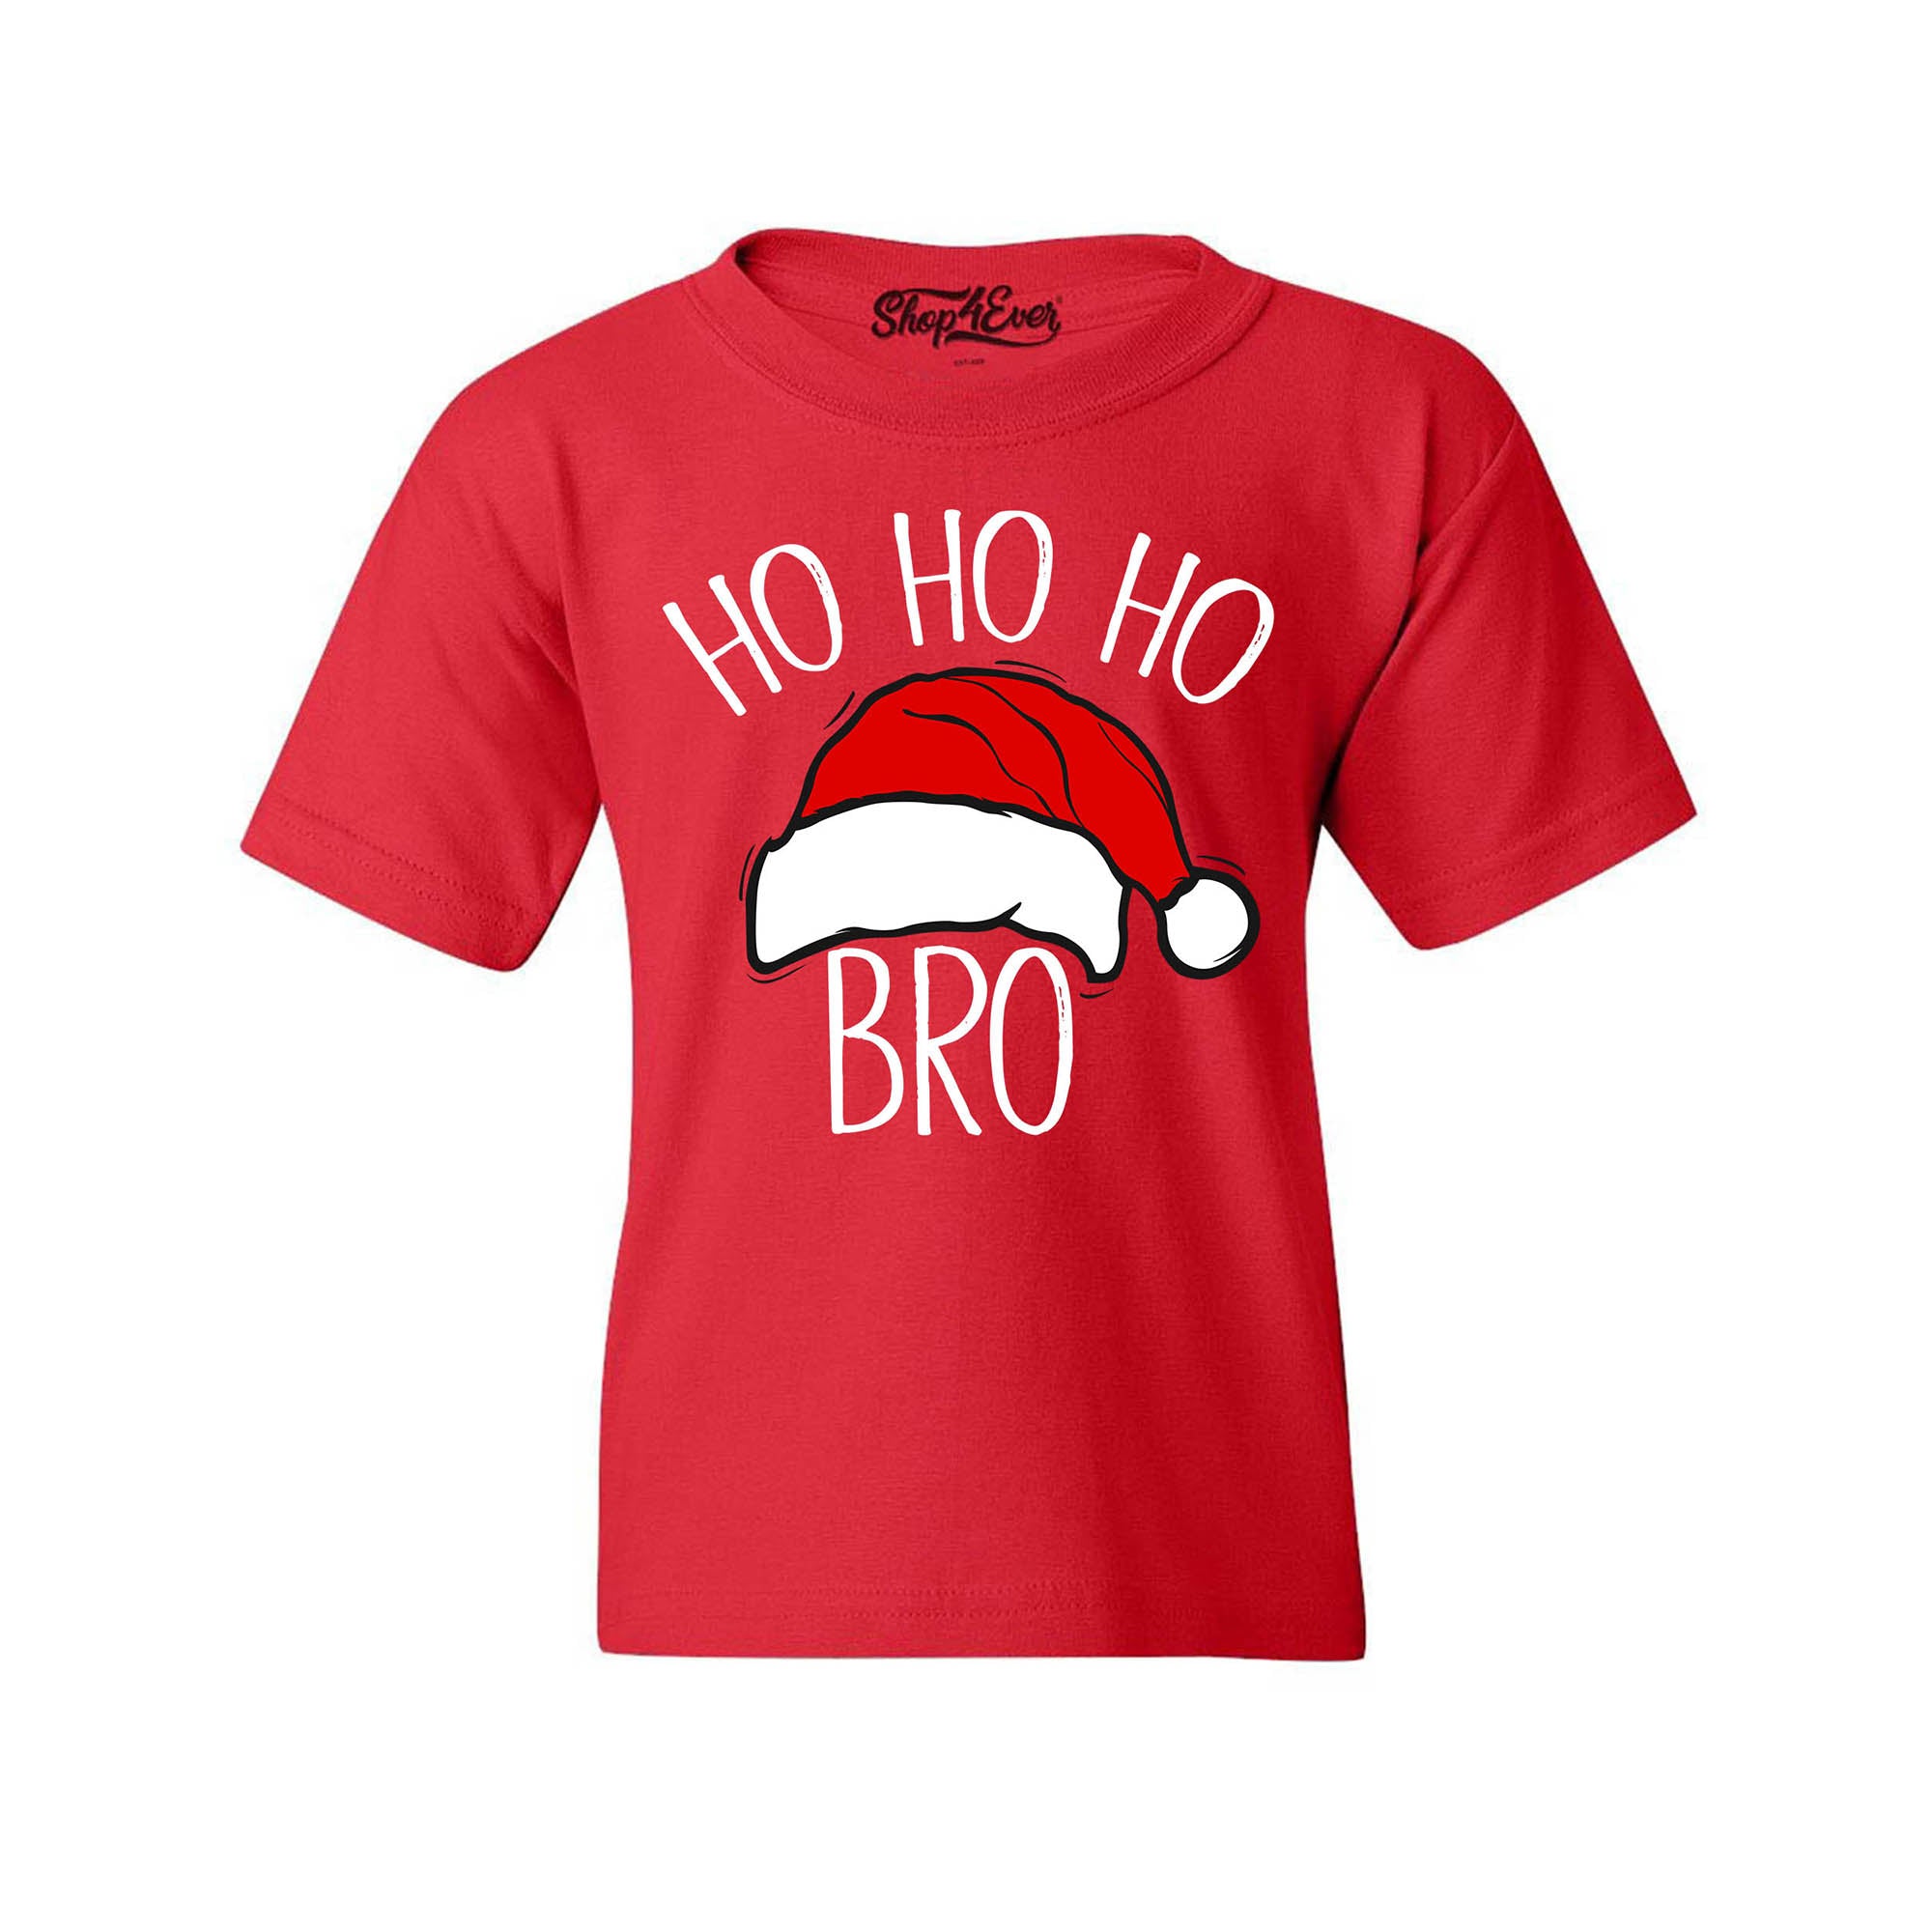 Ho Ho Ho Bro Santa Claus Youth's T-Shirt